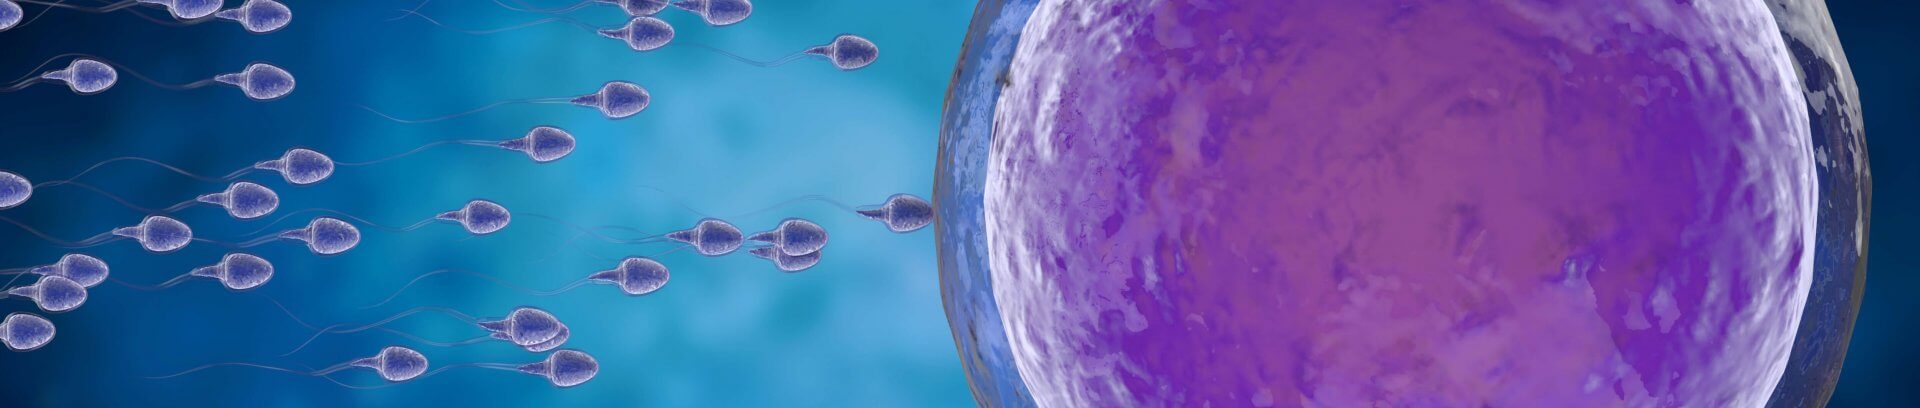 embryo cryopreservation